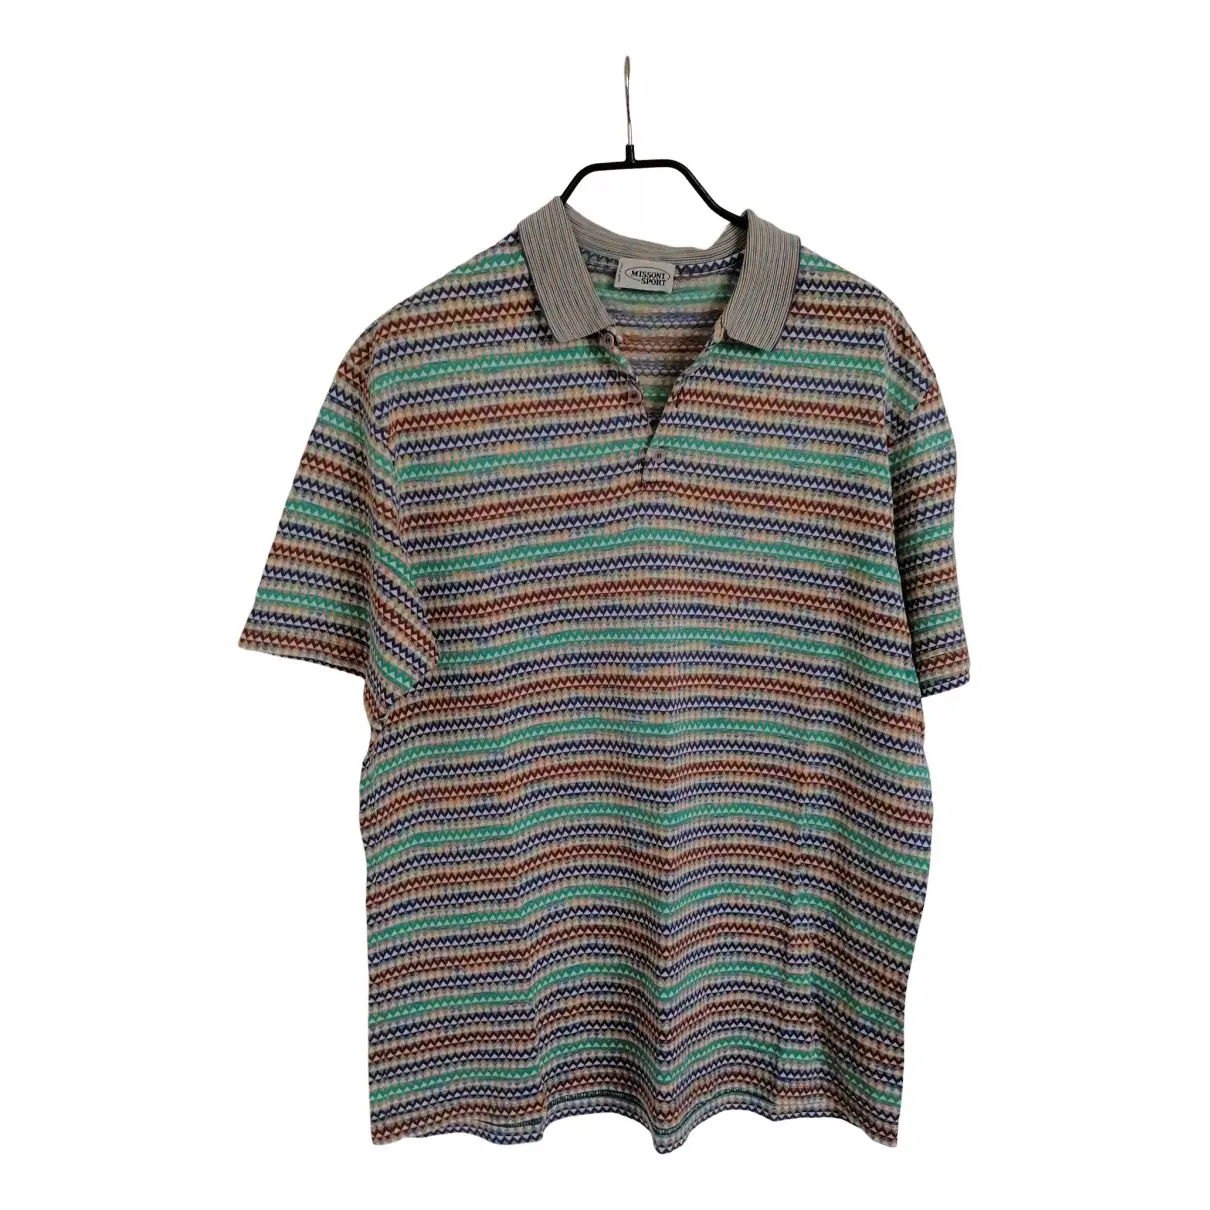 Polo shirt Missoni - Vintage